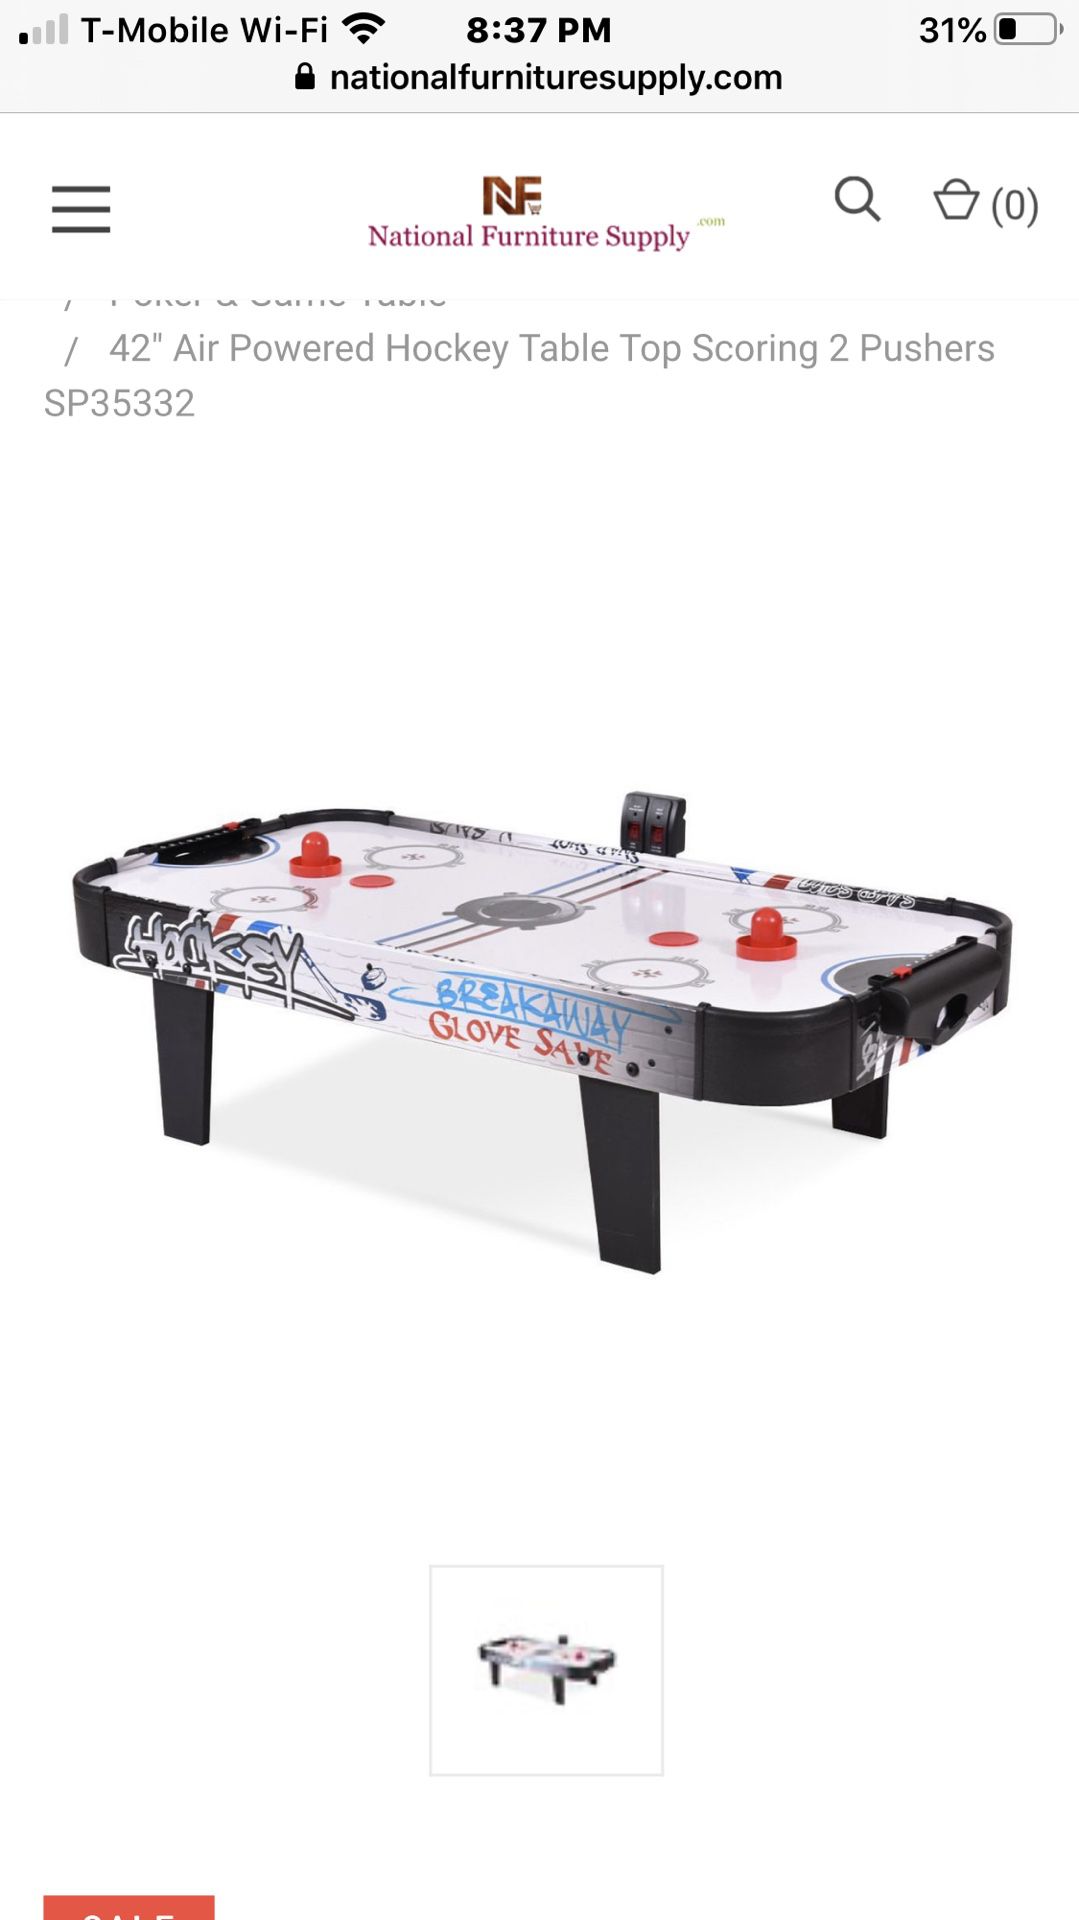 42” air powered hockey table